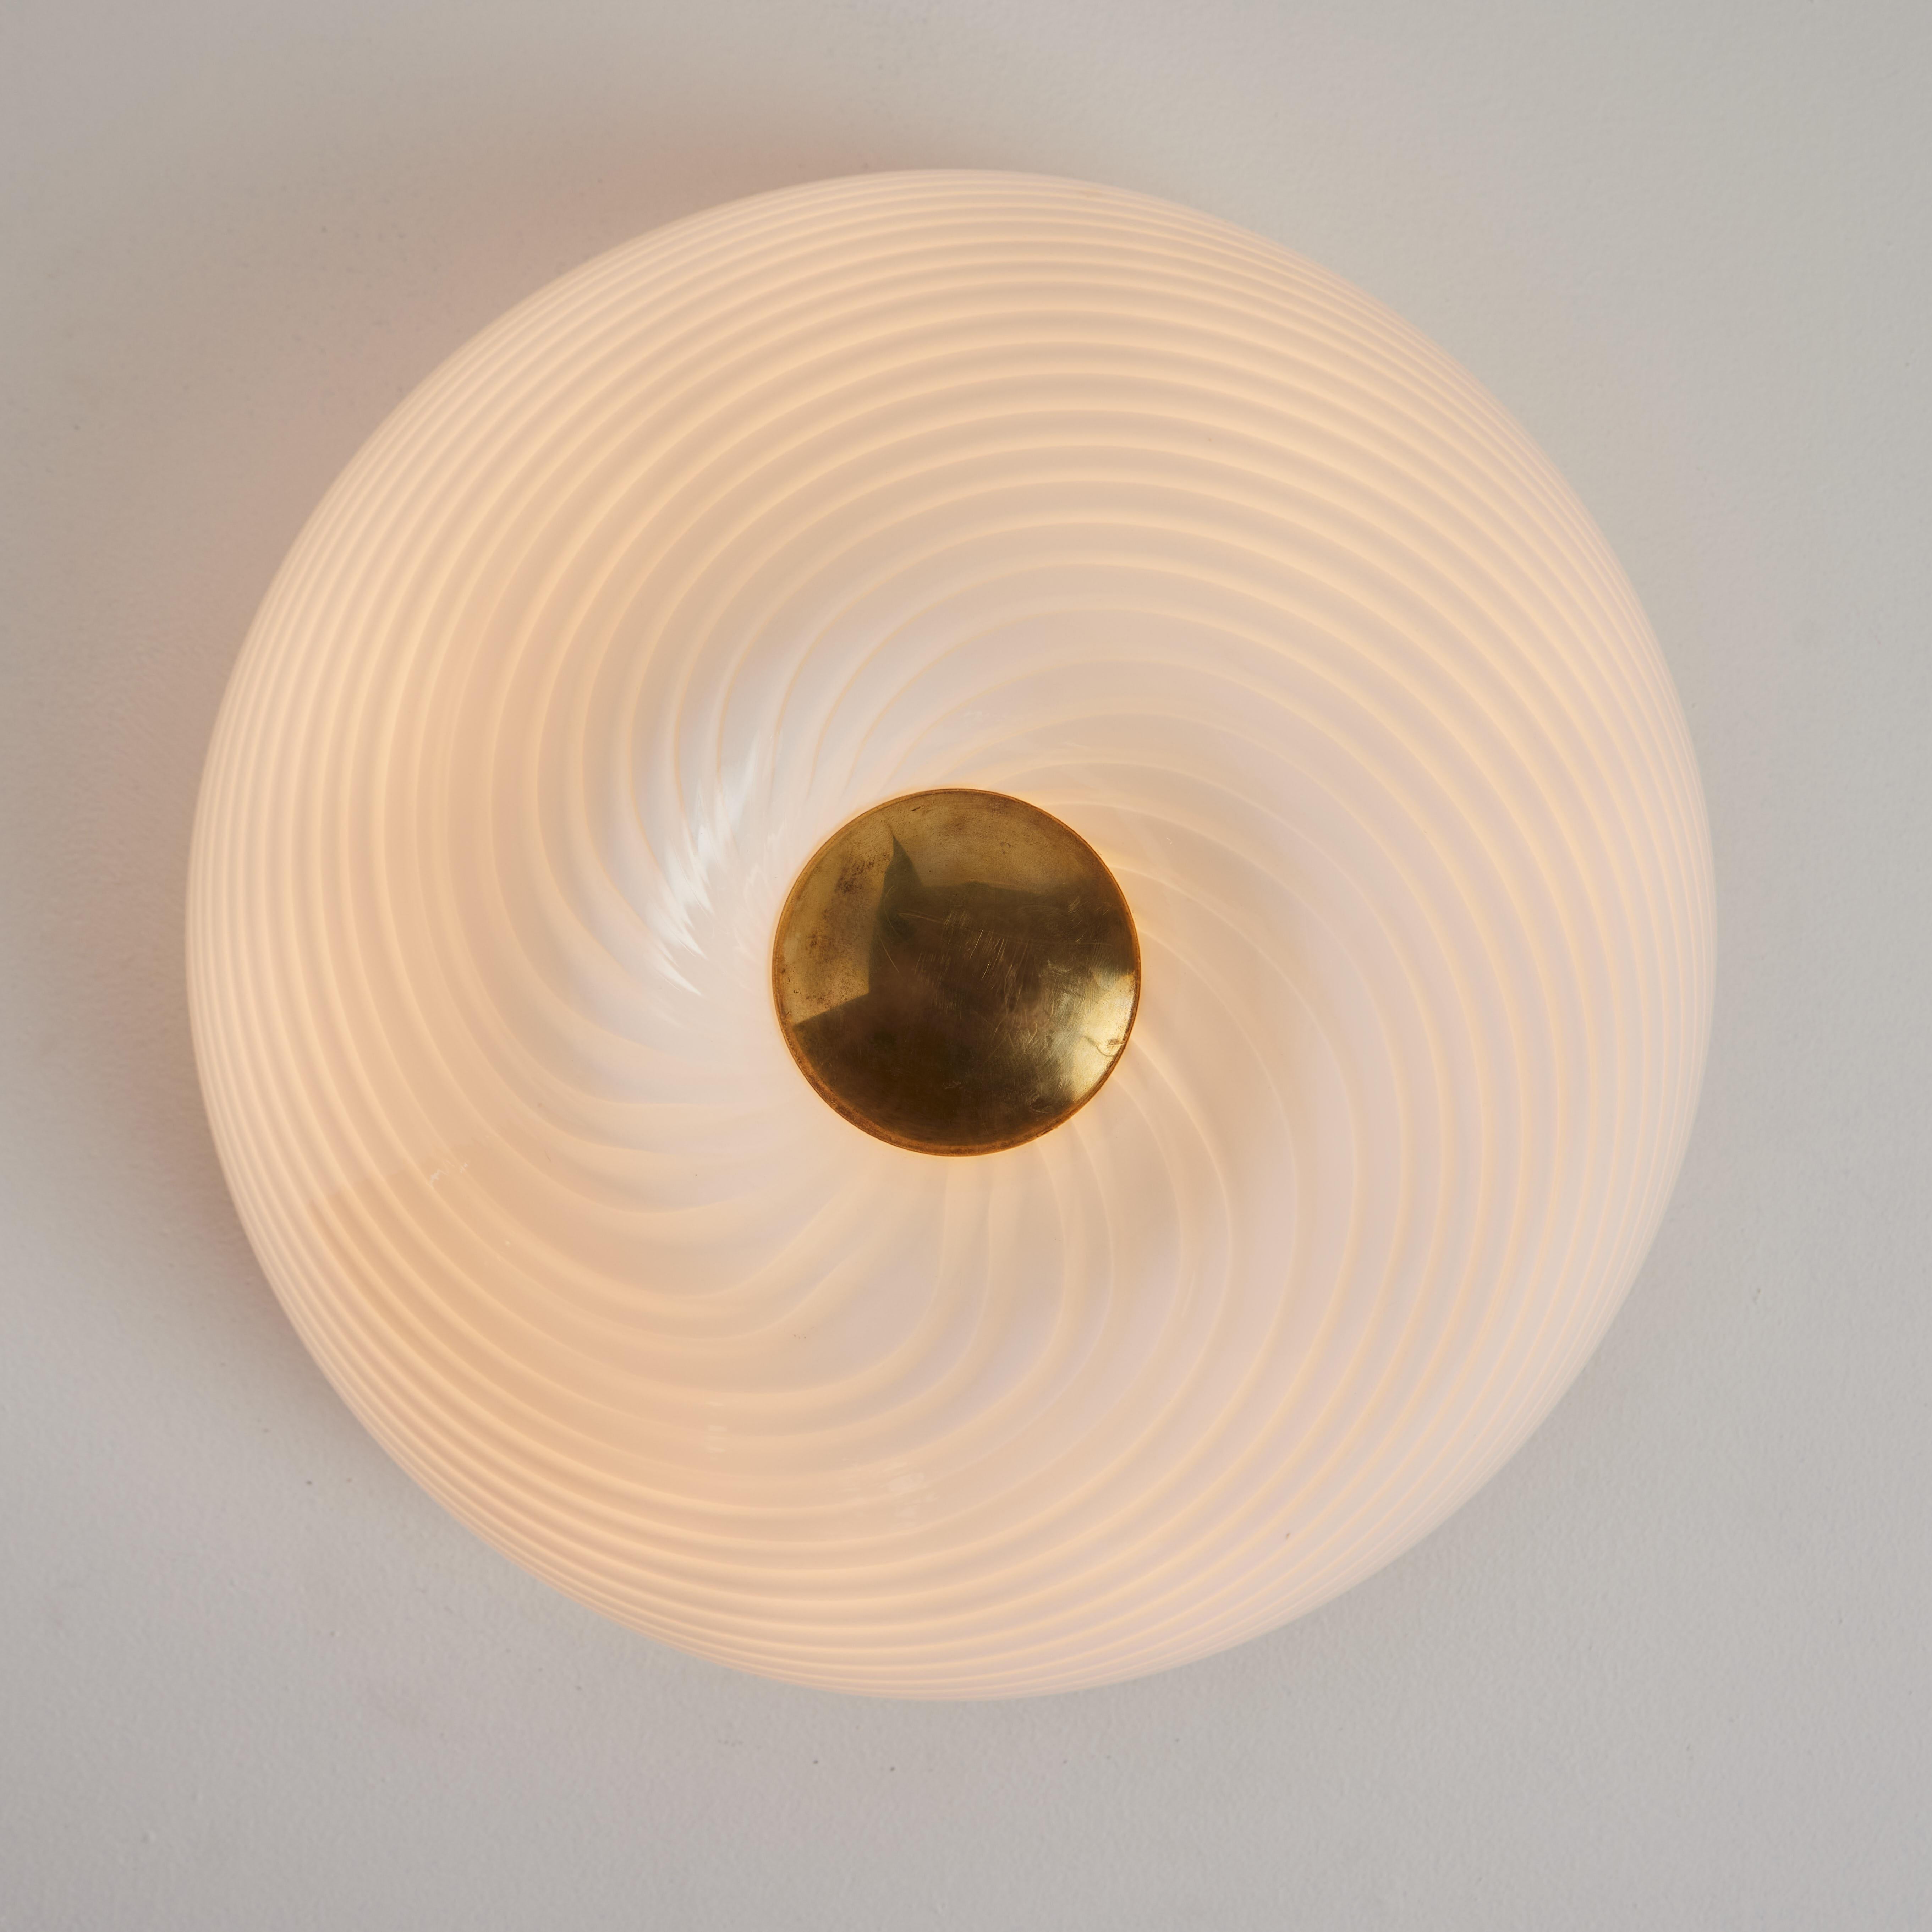 Grande applique ou plafonnier en laiton et verre soufflé de Murano des années 1960 de Vistosi.

Réalisée en verre soufflé de Murano et dotée d'une pièce centrale en laiton, cette rare pièce à encastrer présente un motif en spirale distinctif et peut